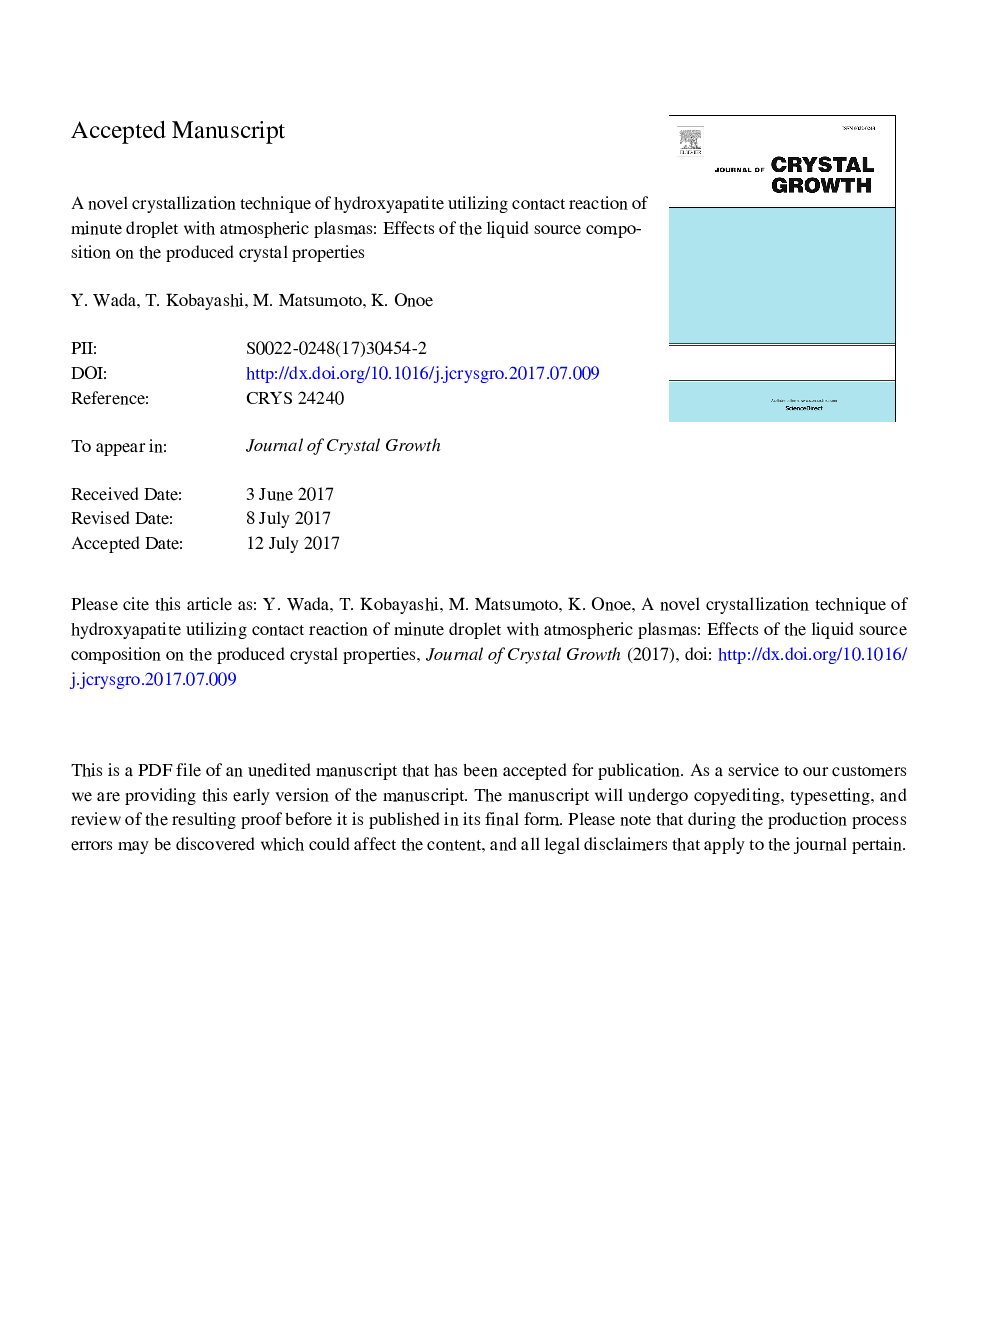 تکنیک کریستالیزاسیون جدید هیدروکسی آپاتیت با استفاده از واکنش تماس قطره دقیقه با پلاسمای جو: اثر ترکیب مایع منبع بر خواص کریستال تولید شده 